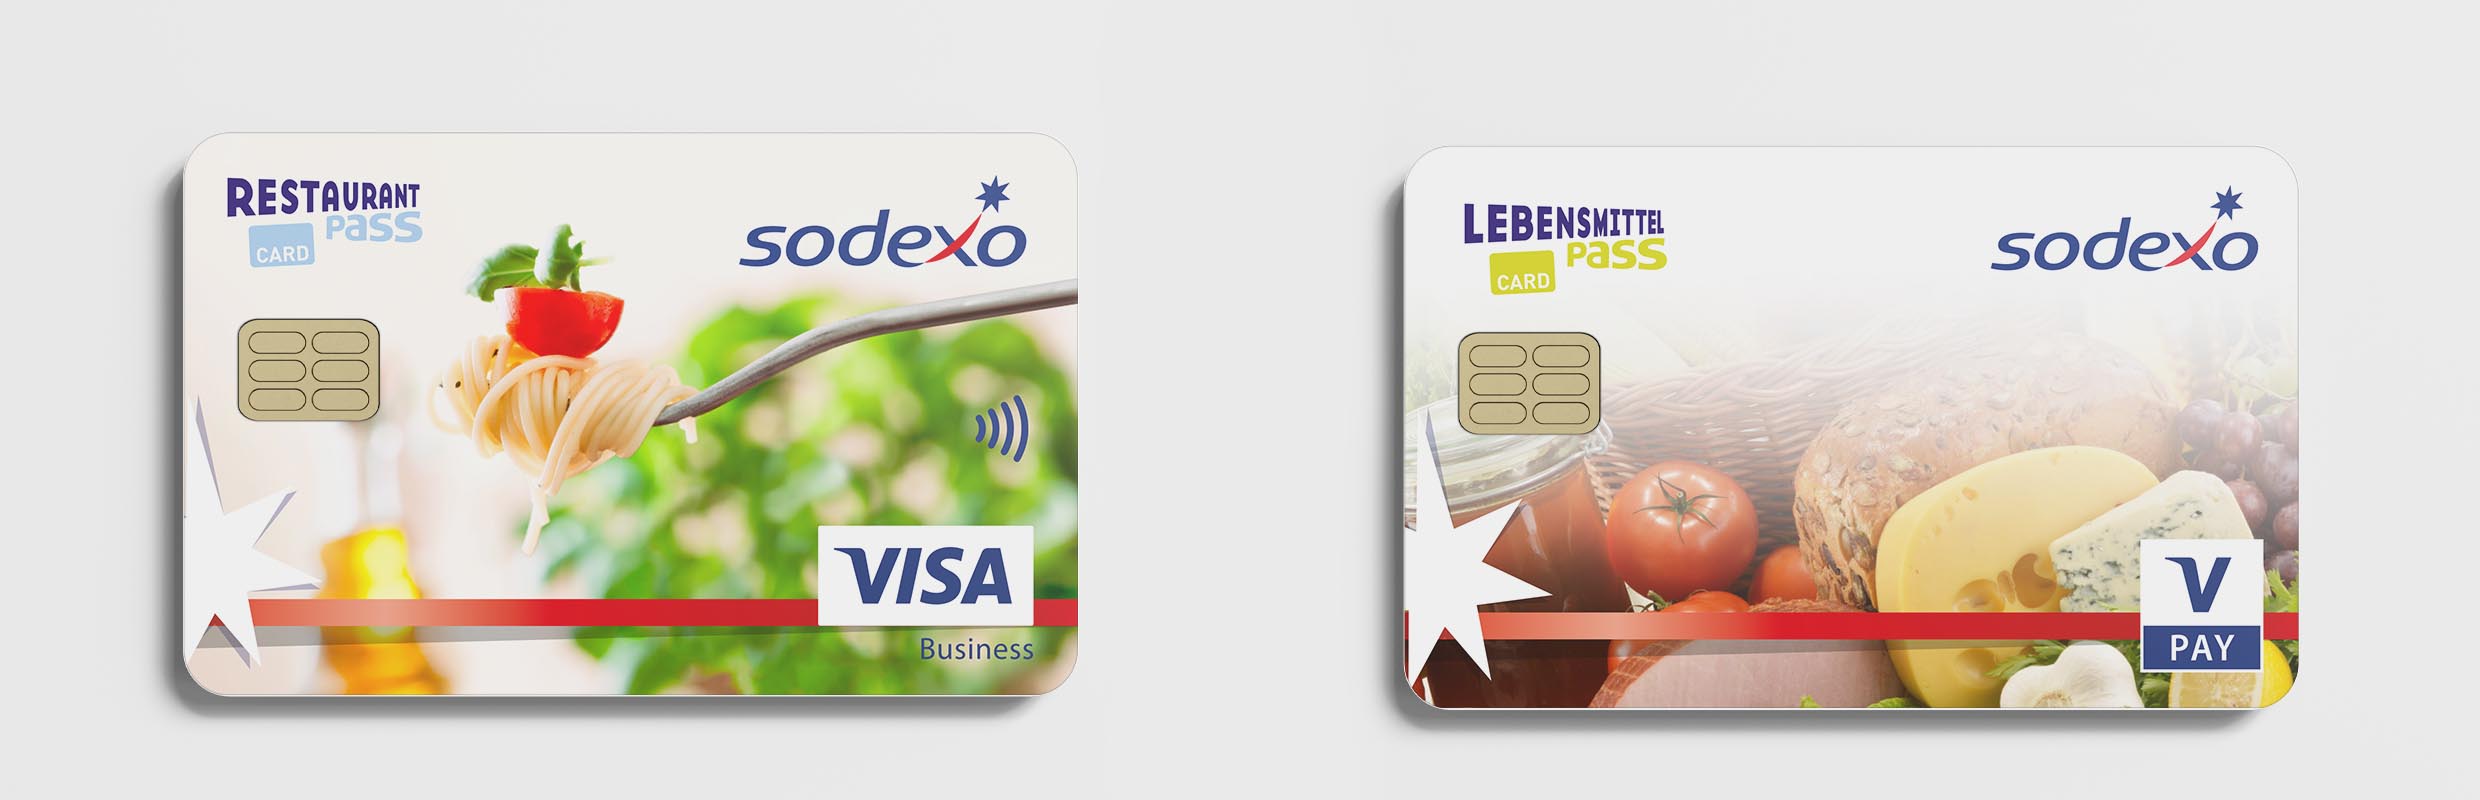 Sodexo-Restaurant-Pass-Card-und-Lenensmittel-Pass-Card